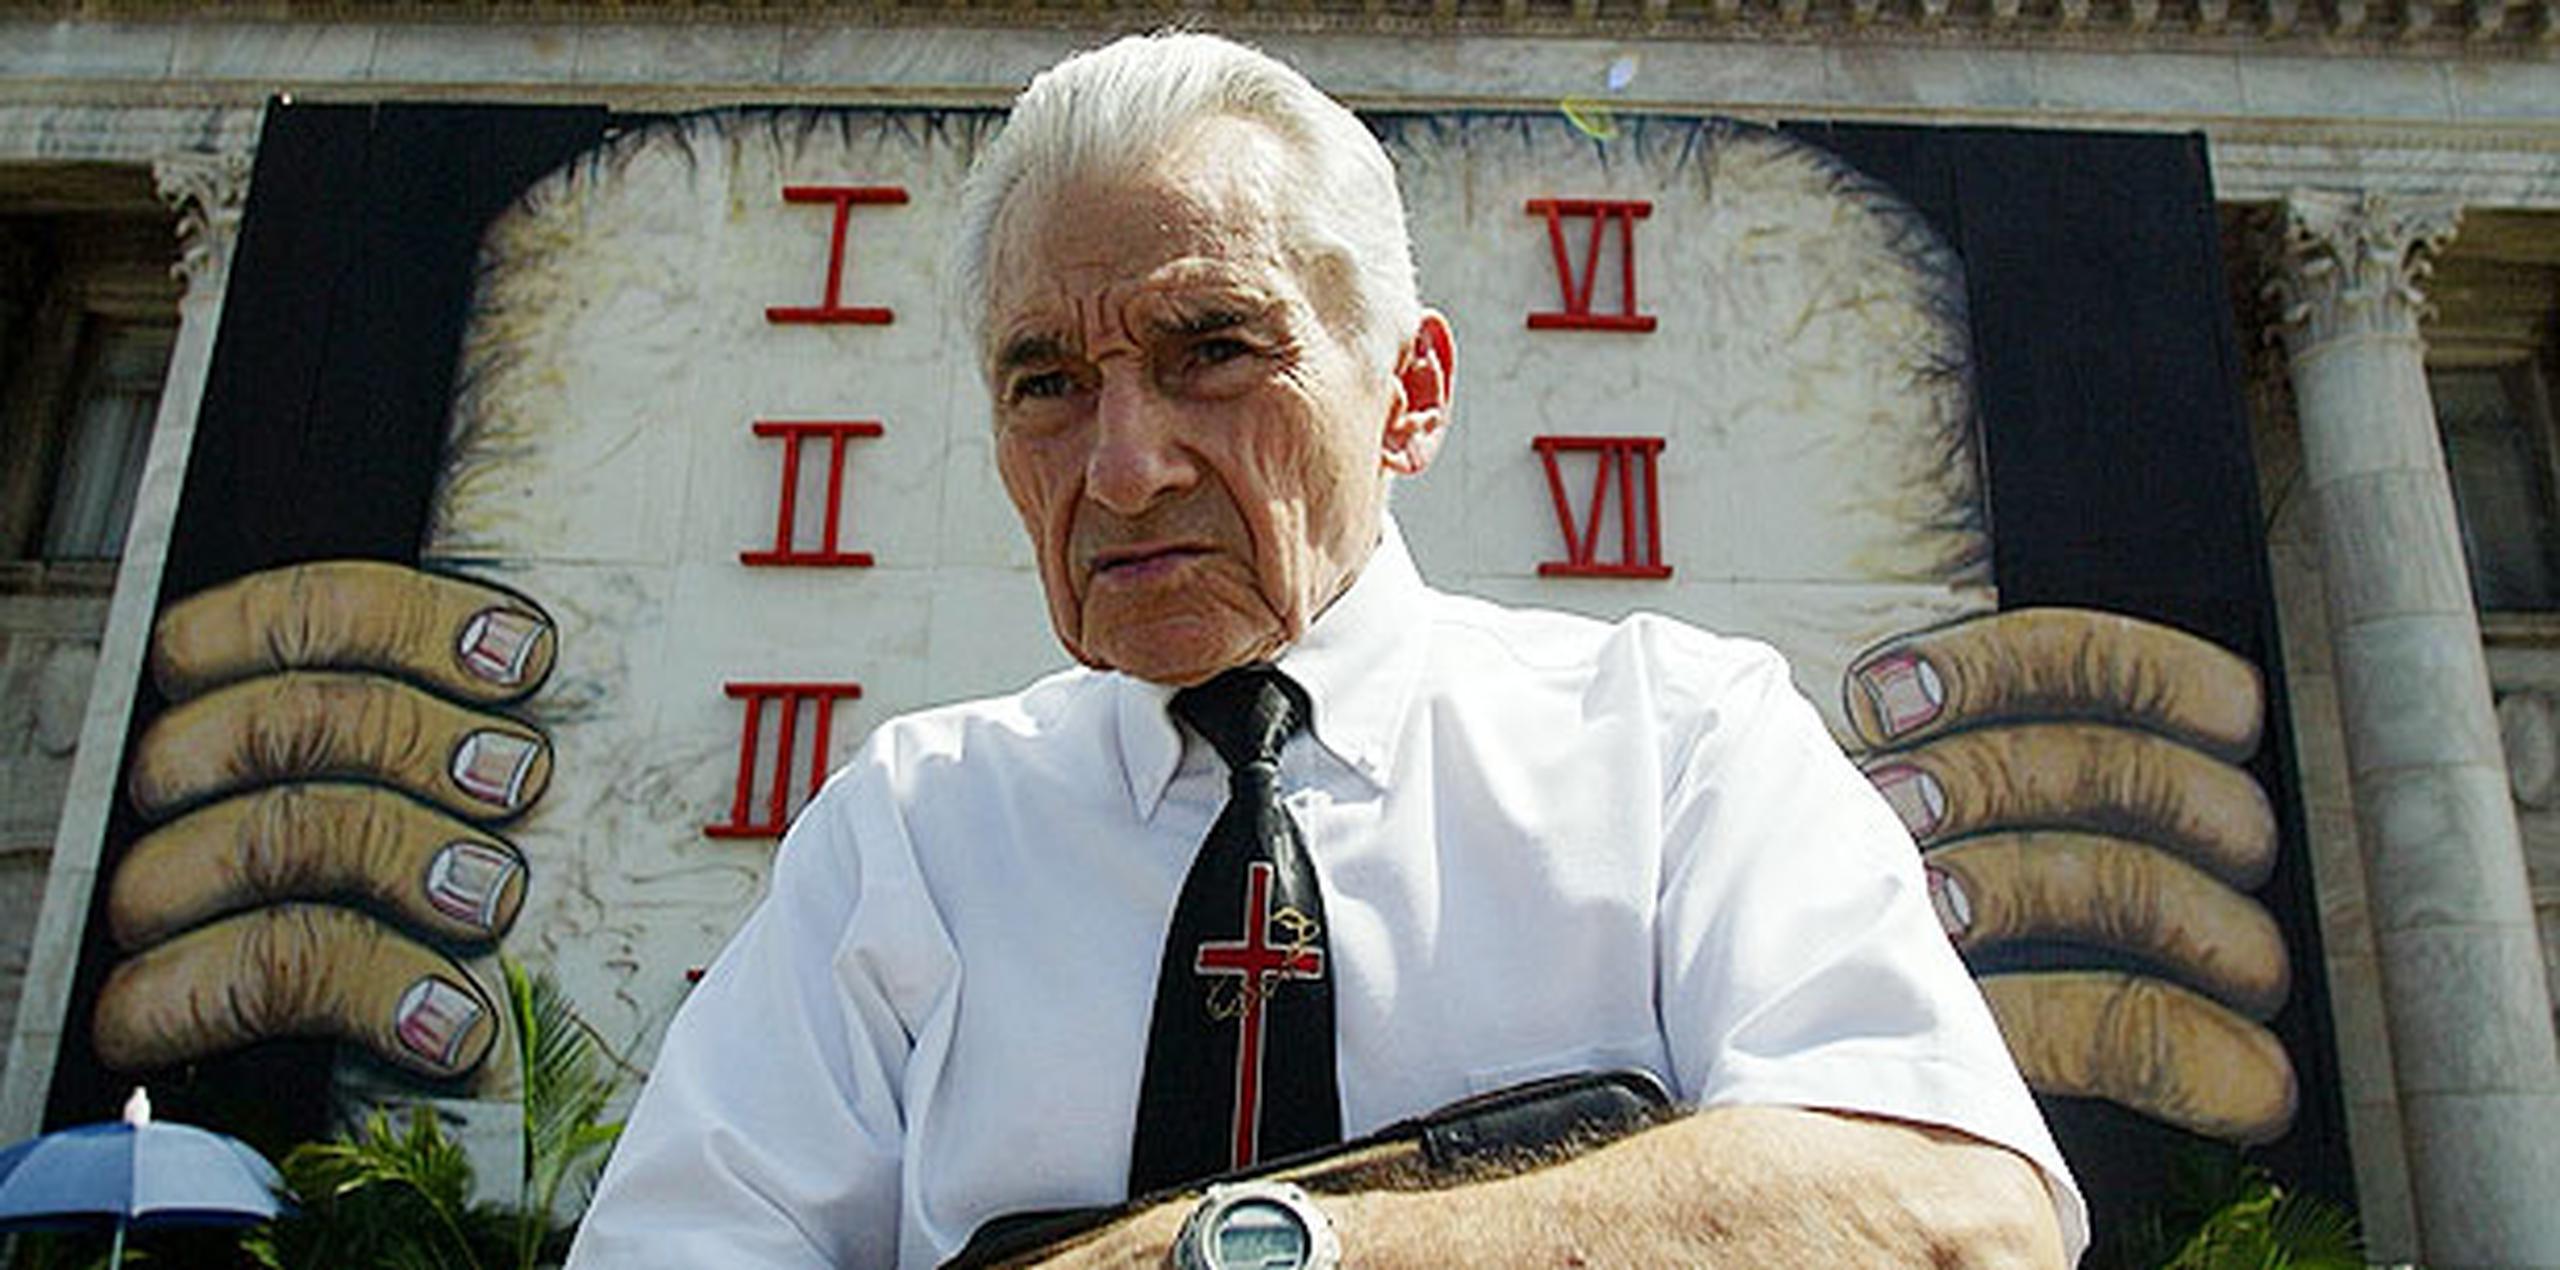 José Joaquín Ávila, nombre de pila del predicador, llevaba 53 años sirviendo al Ministerio Cristo Viene. (Archivo)